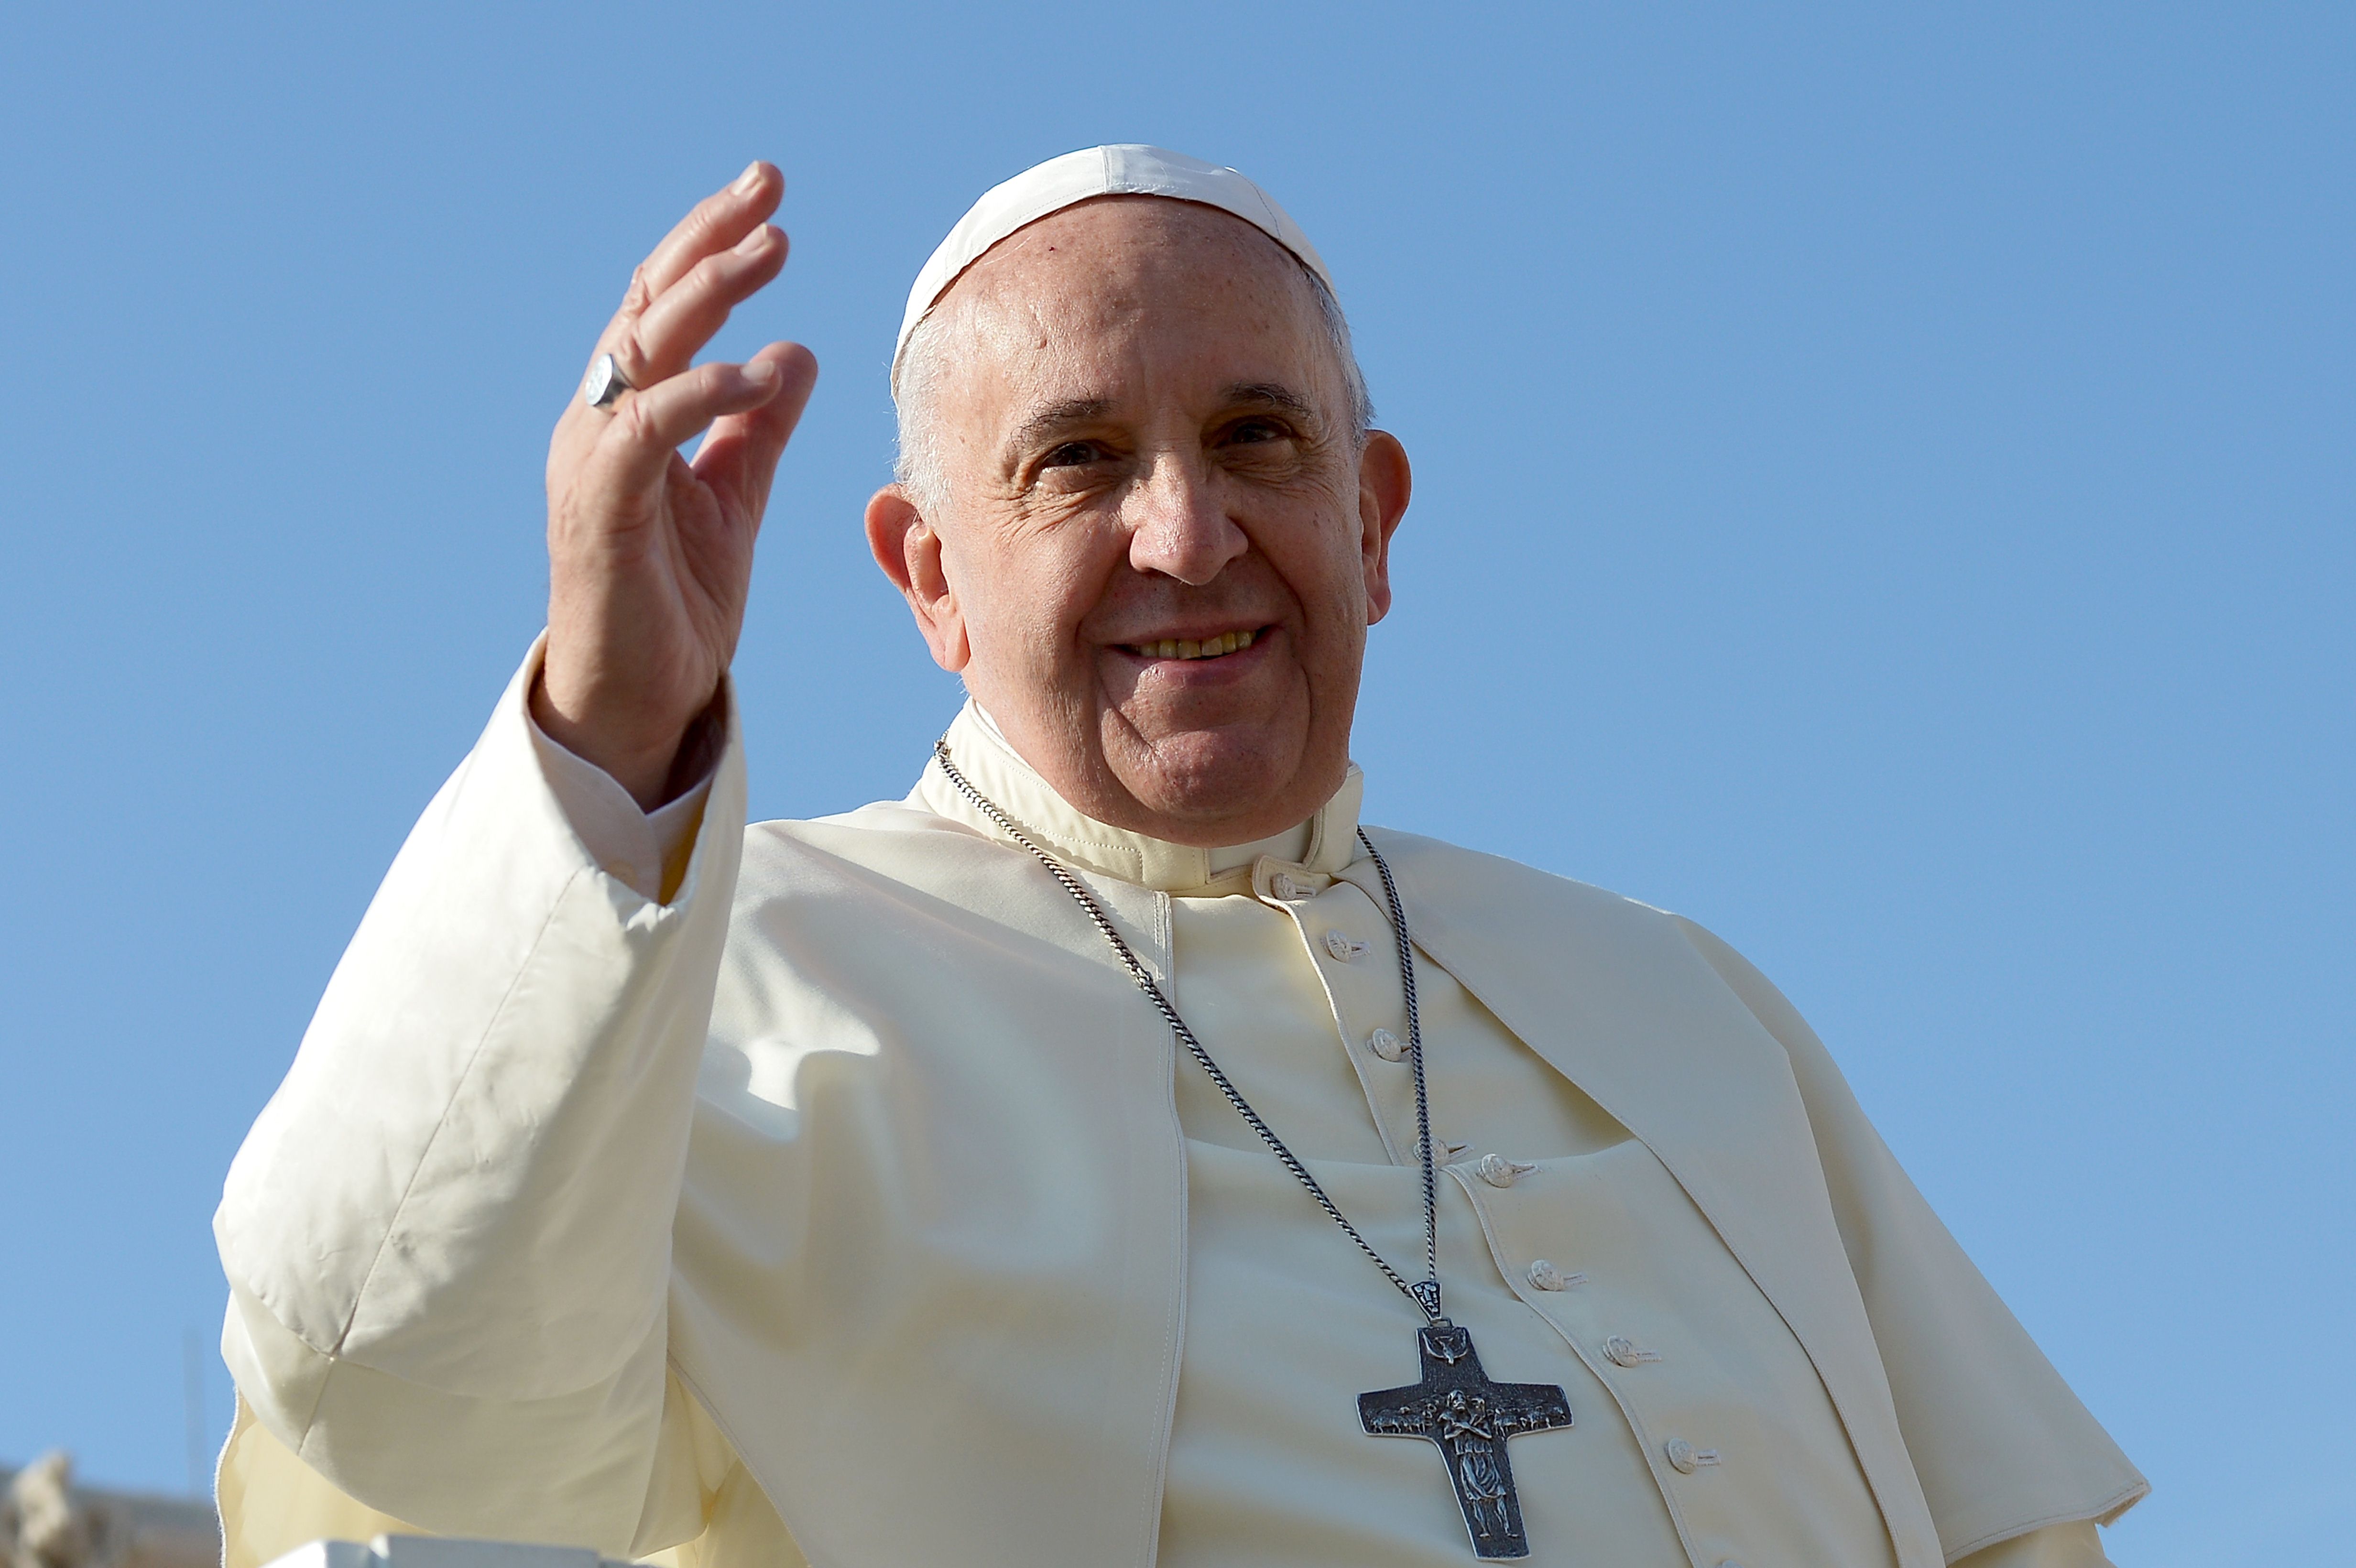 Papež František byl převezen do římské nemocnice na vyšetření